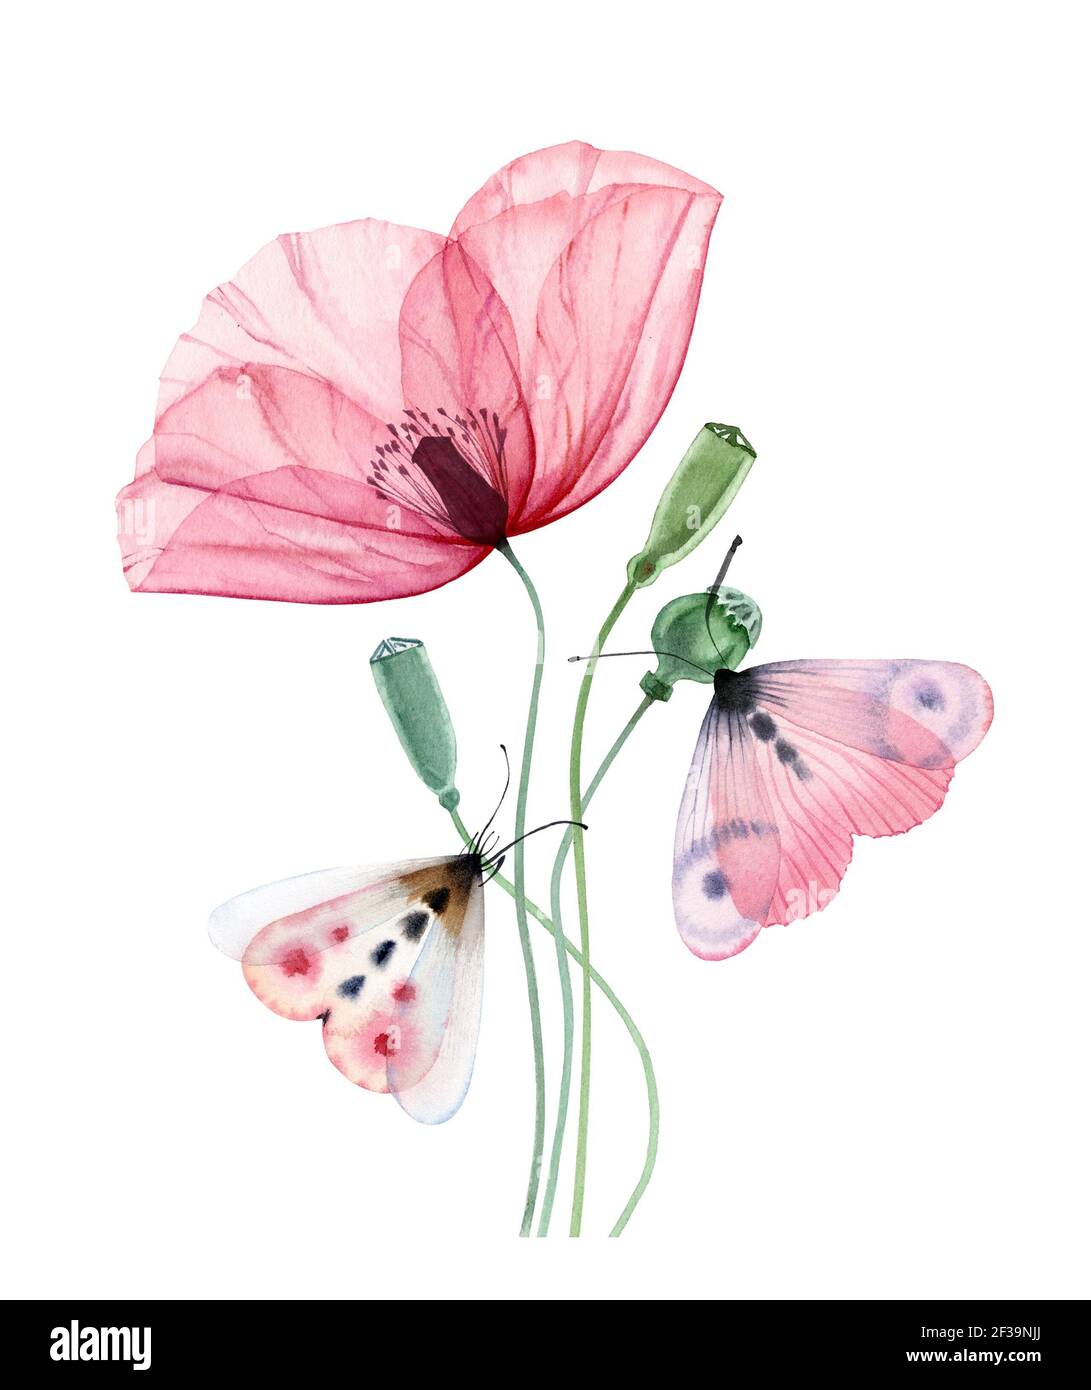 Aquarell Mohn Pflanze. Große transparente rosa Blume mit zwei Schmetterlingen. Hand bemalt drucken bereit abstrakte Kunstwerk. Botanische Abbildung mit Stockfoto